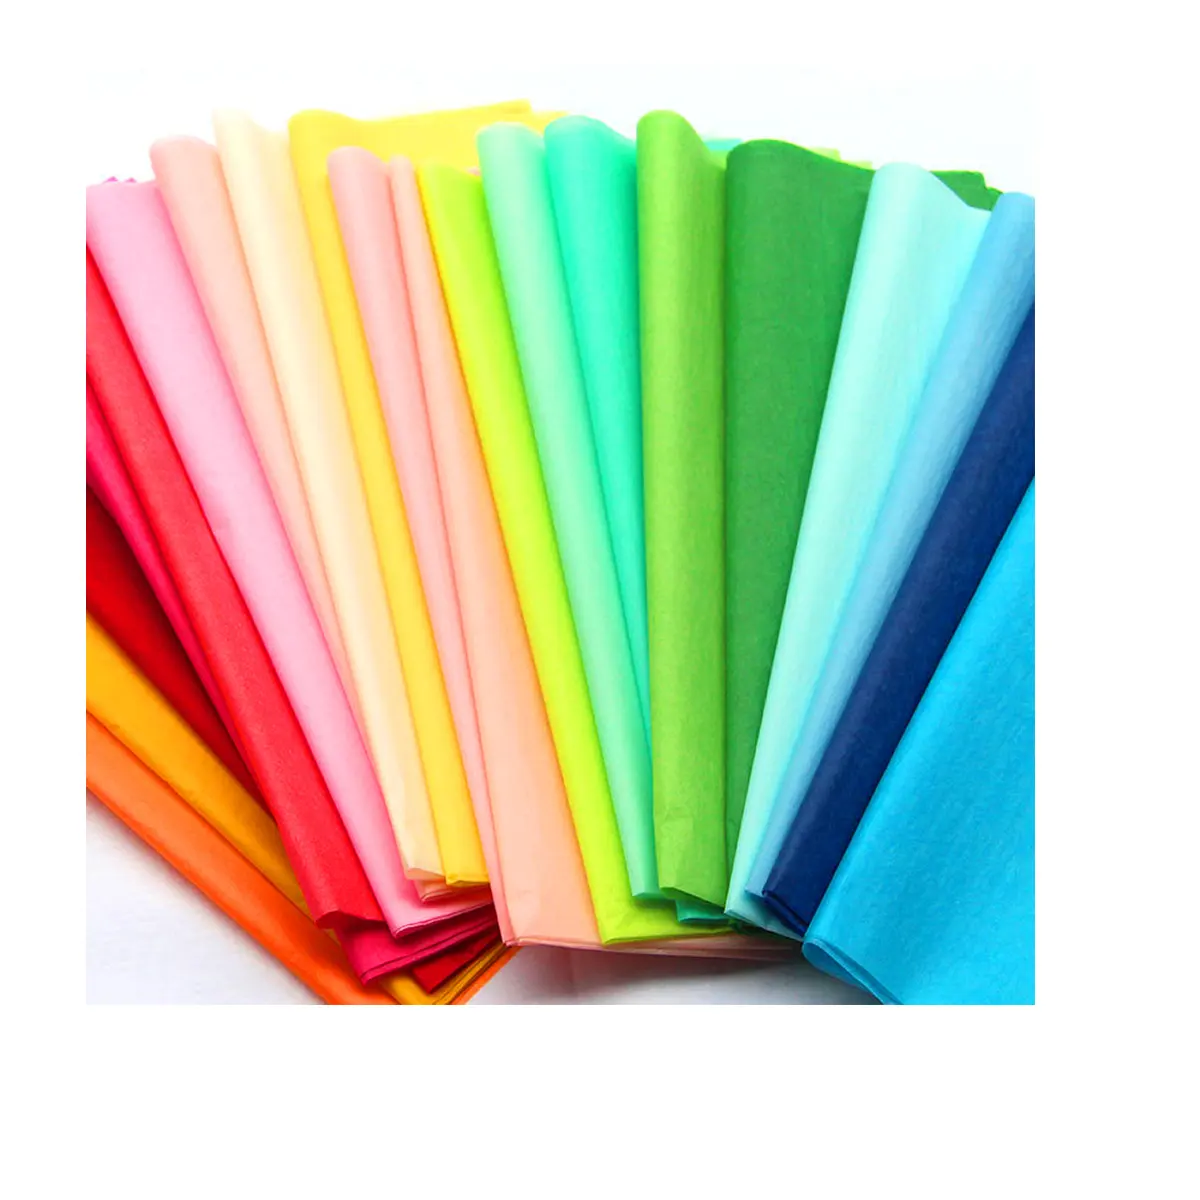 Đầy Màu sắc gói Tissue giấy lụa sang trọng giấy gói Tissue Chất lượng cao 17gsm gói Tissue giấy